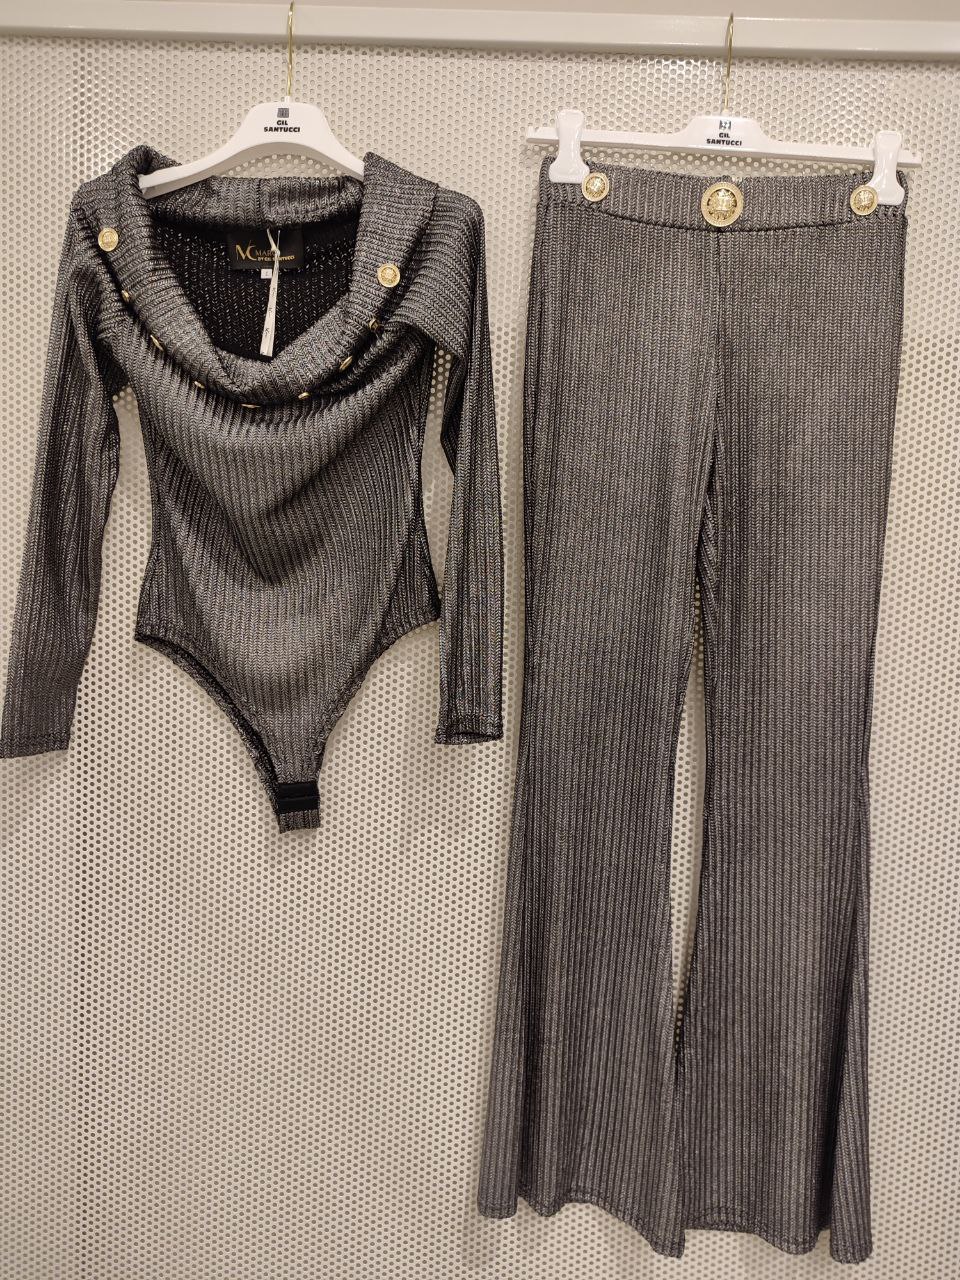 Итальянская одежда, бренд Gil Santucci, арт. 73112371